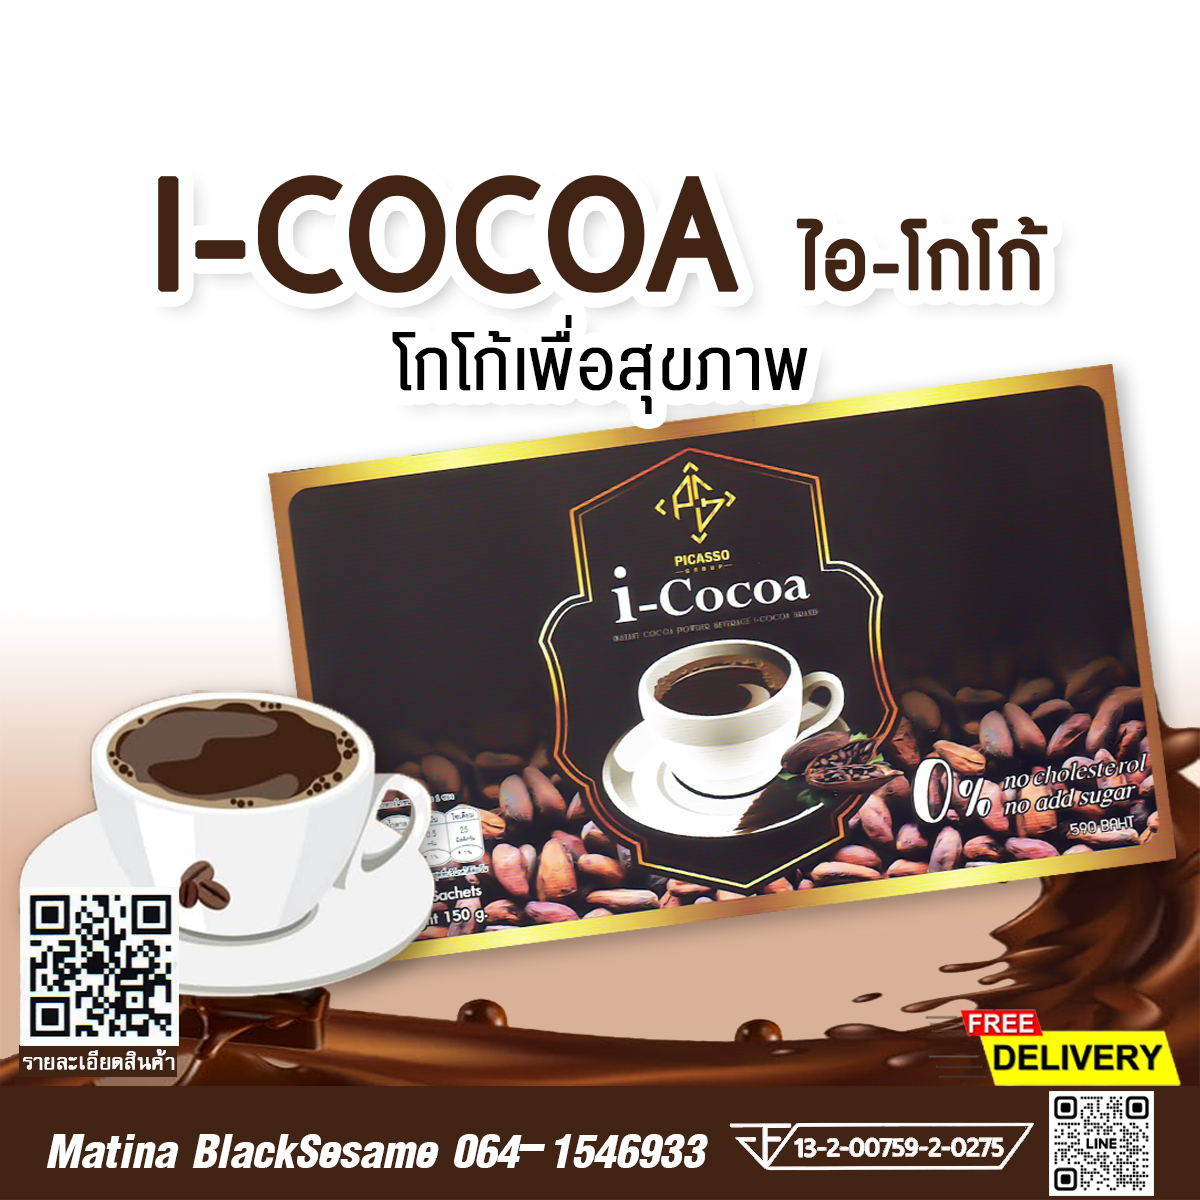 I-COCOA โกโก้เพื่อสุขภาพ